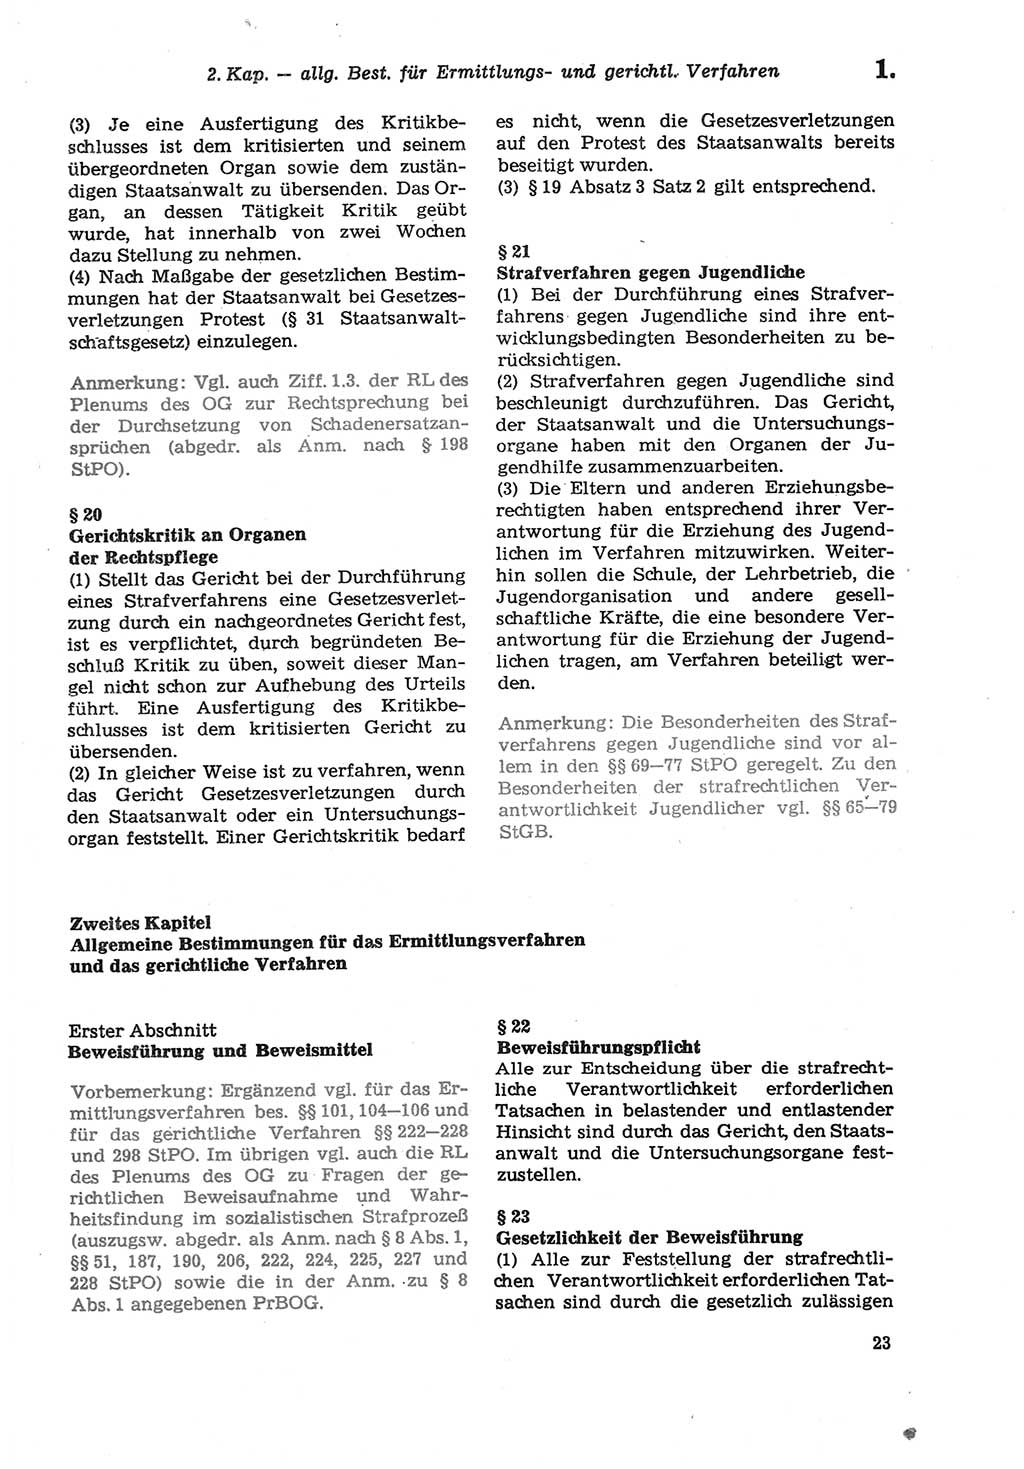 Strafprozeßordnung (StPO) der Deutschen Demokratischen Republik (DDR) sowie angrenzende Gesetze und Bestimmungen 1979, Seite 23 (StPO DDR Ges. Best. 1979, S. 23)